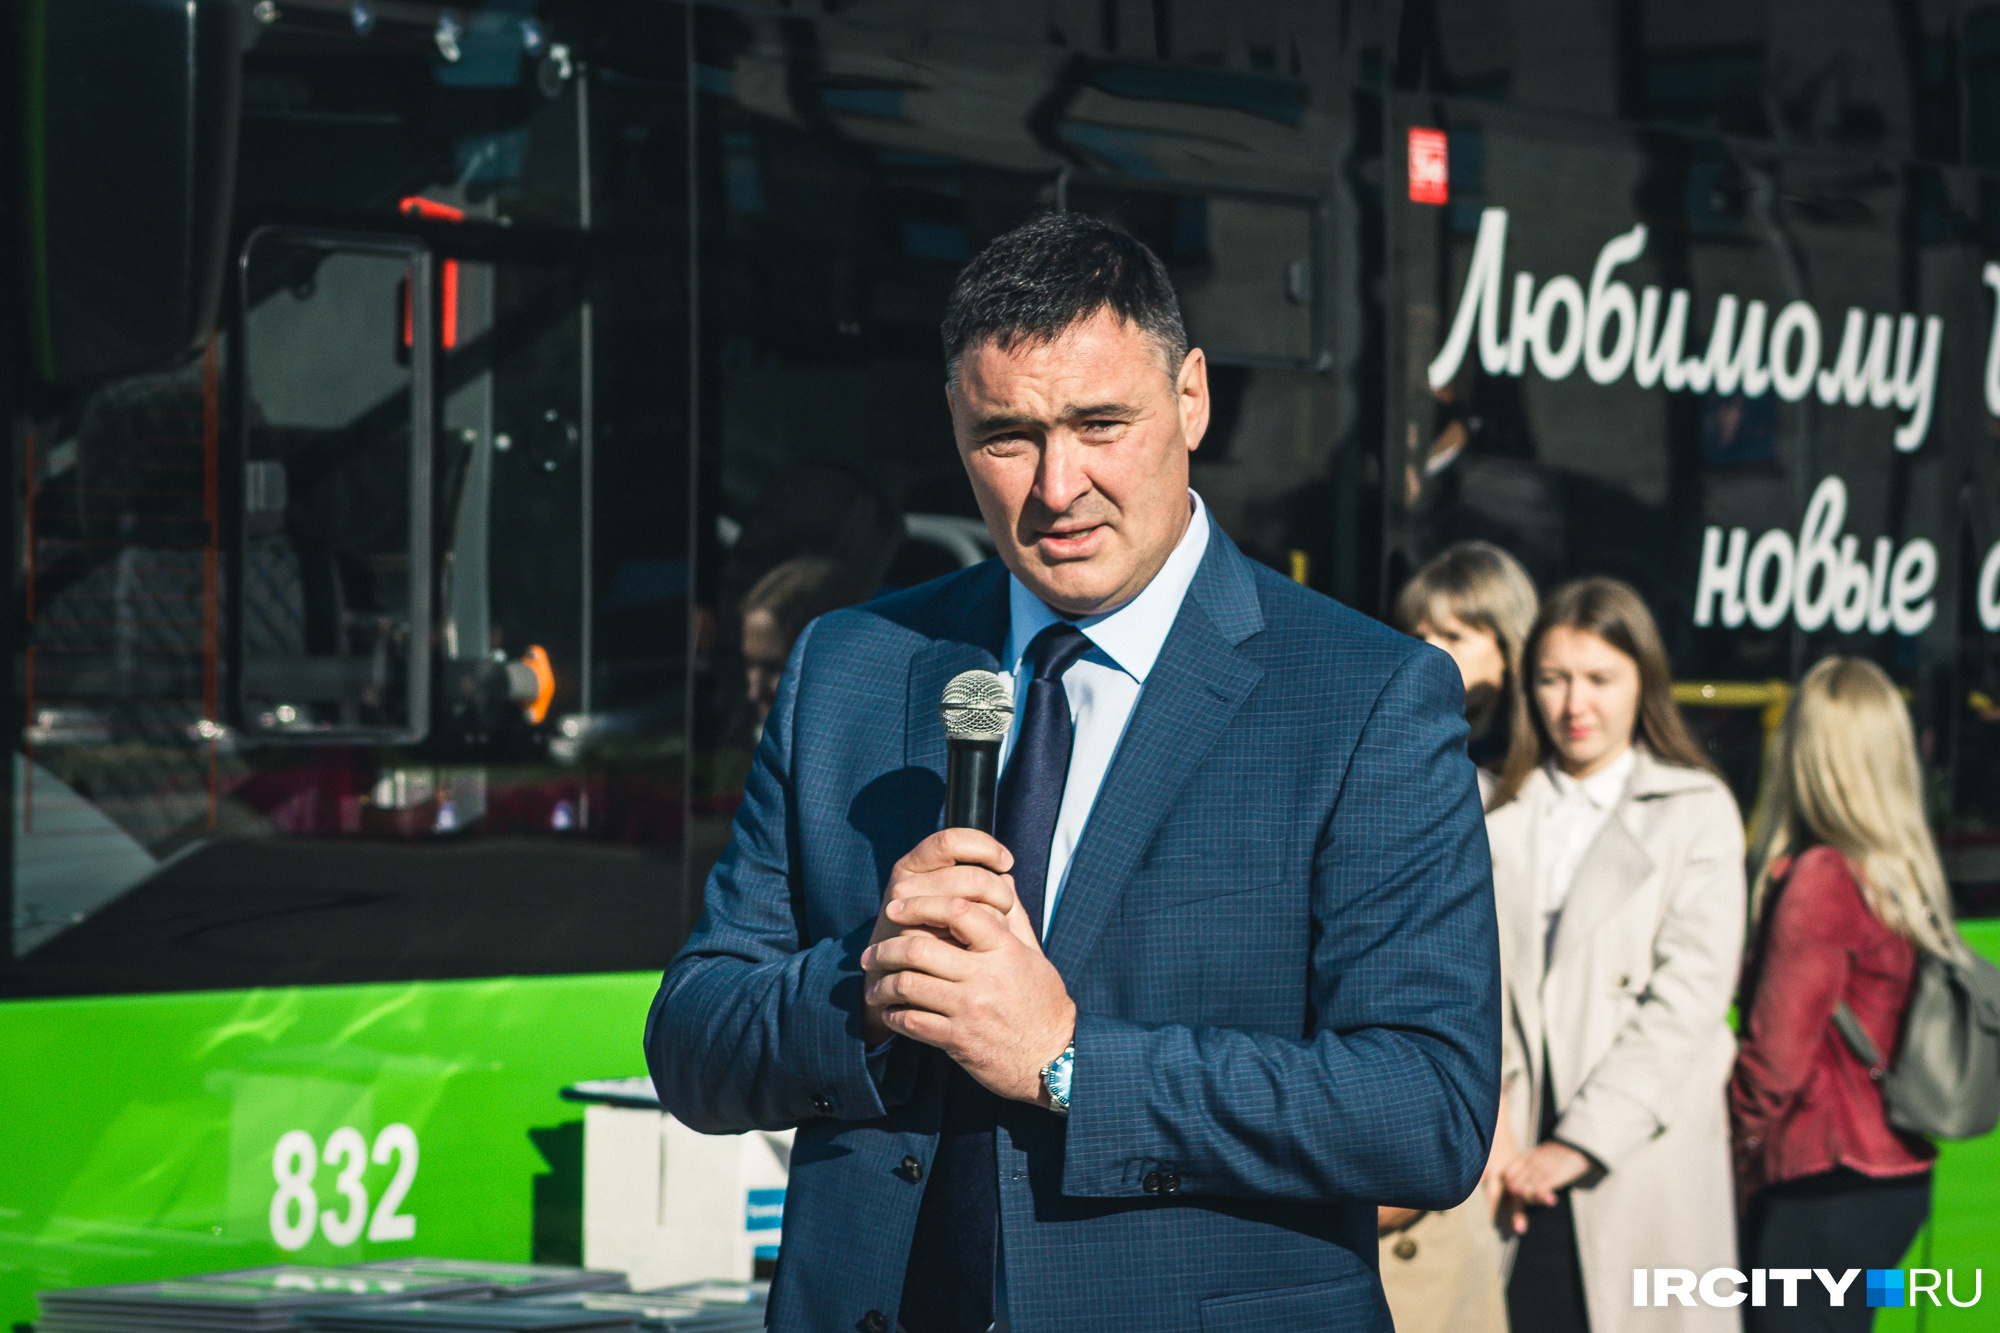 Мэр Иркутска Руслан Болотов поздравил всех с приобретением новых машин